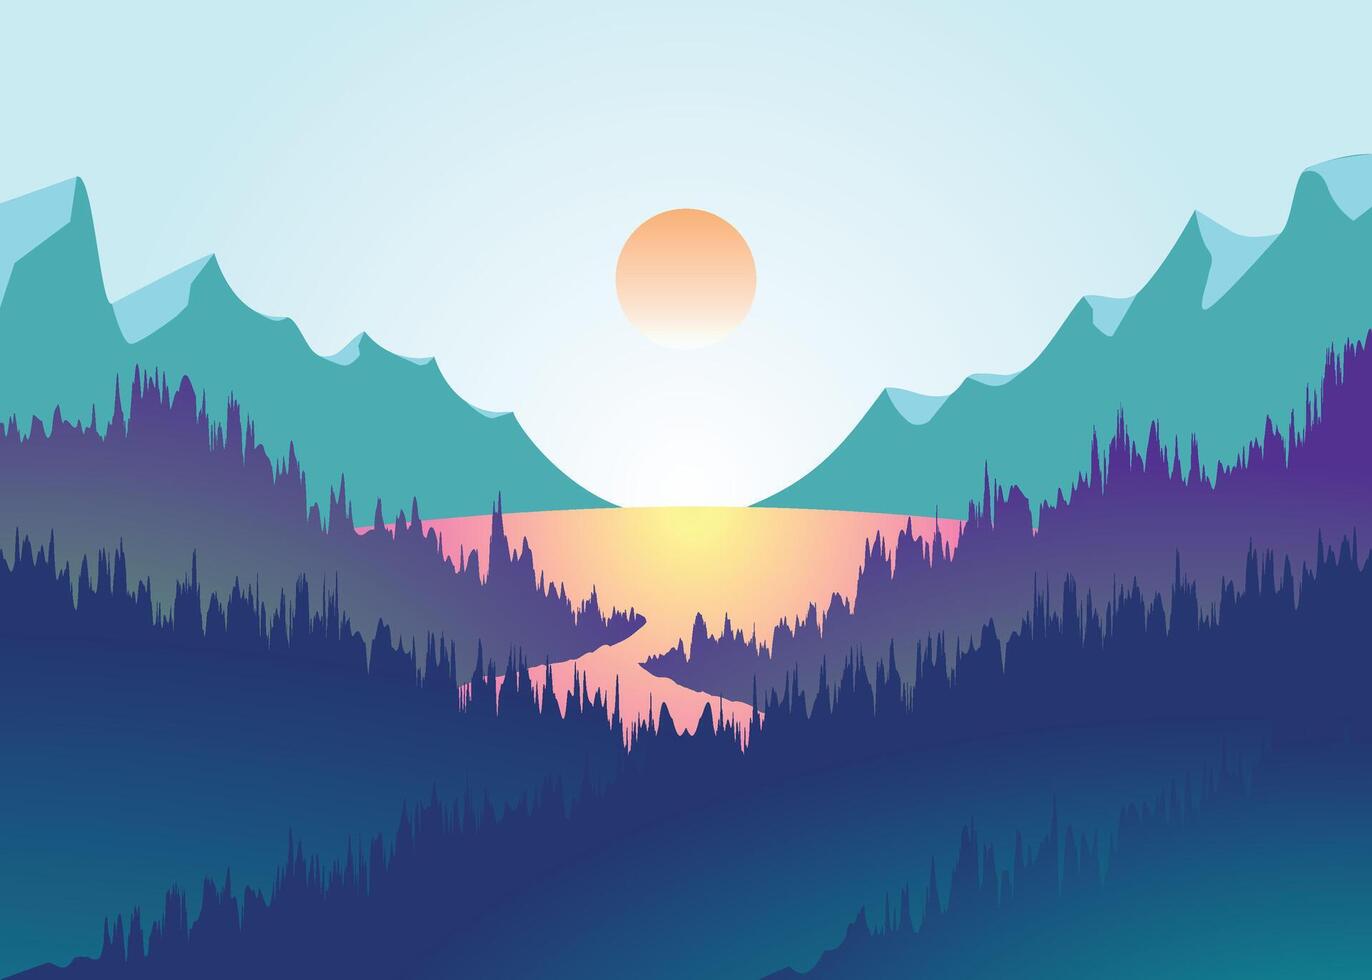 hermosa dibujos animados fantasía paisaje con puesta de sol o amanecer en en capas árbol con un lago en el medio vector